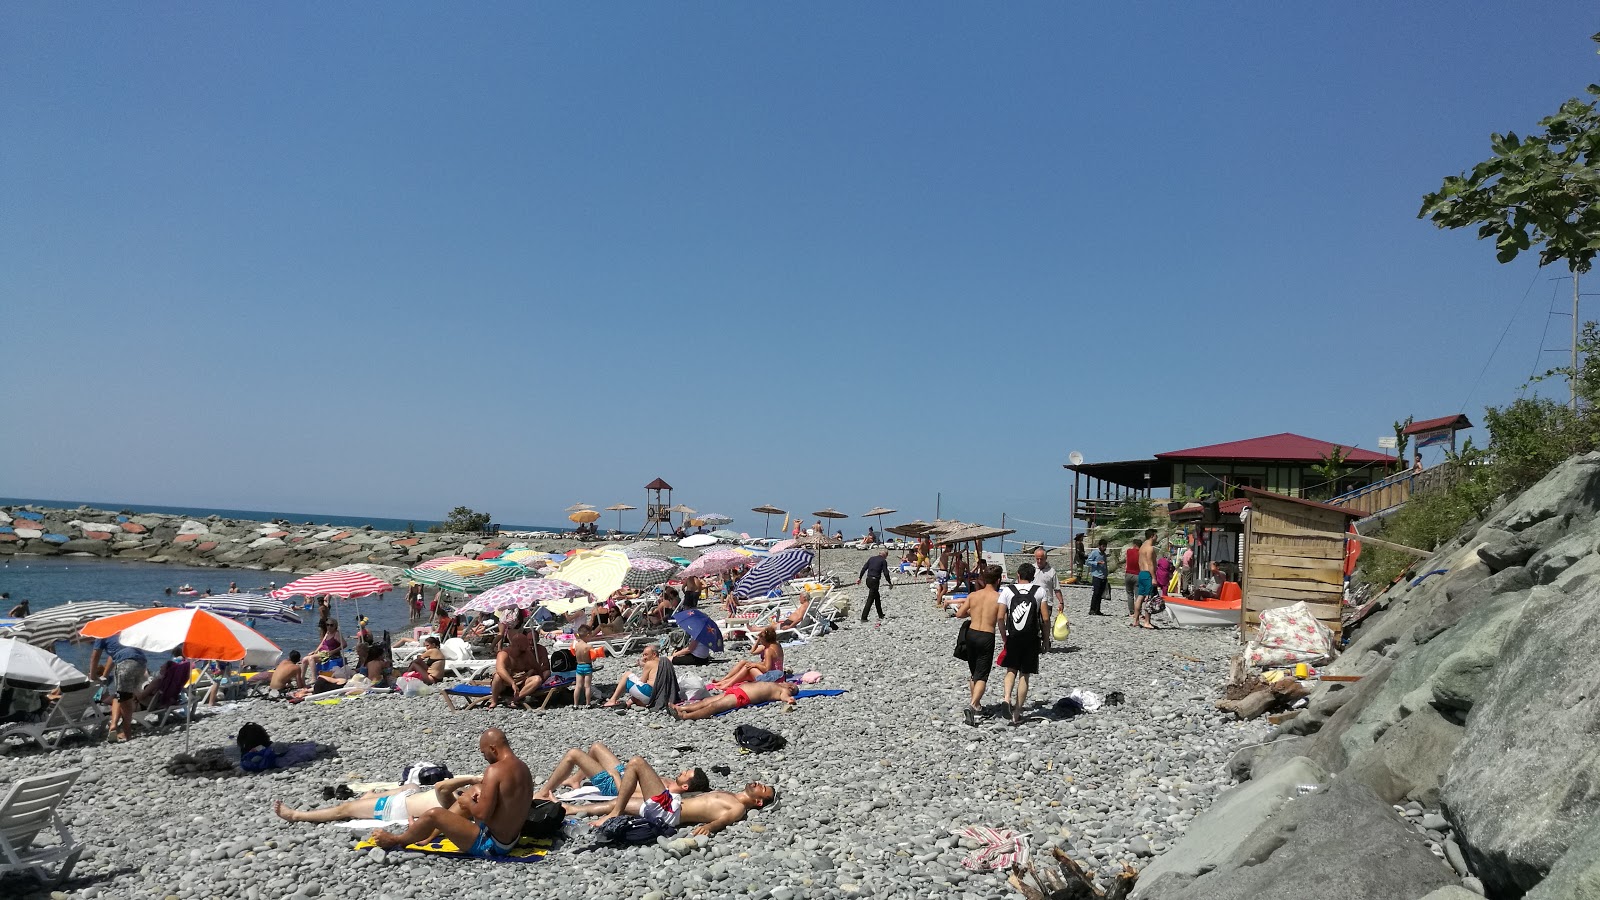 Fotografija Arhavi Belediye Plaji in naselje